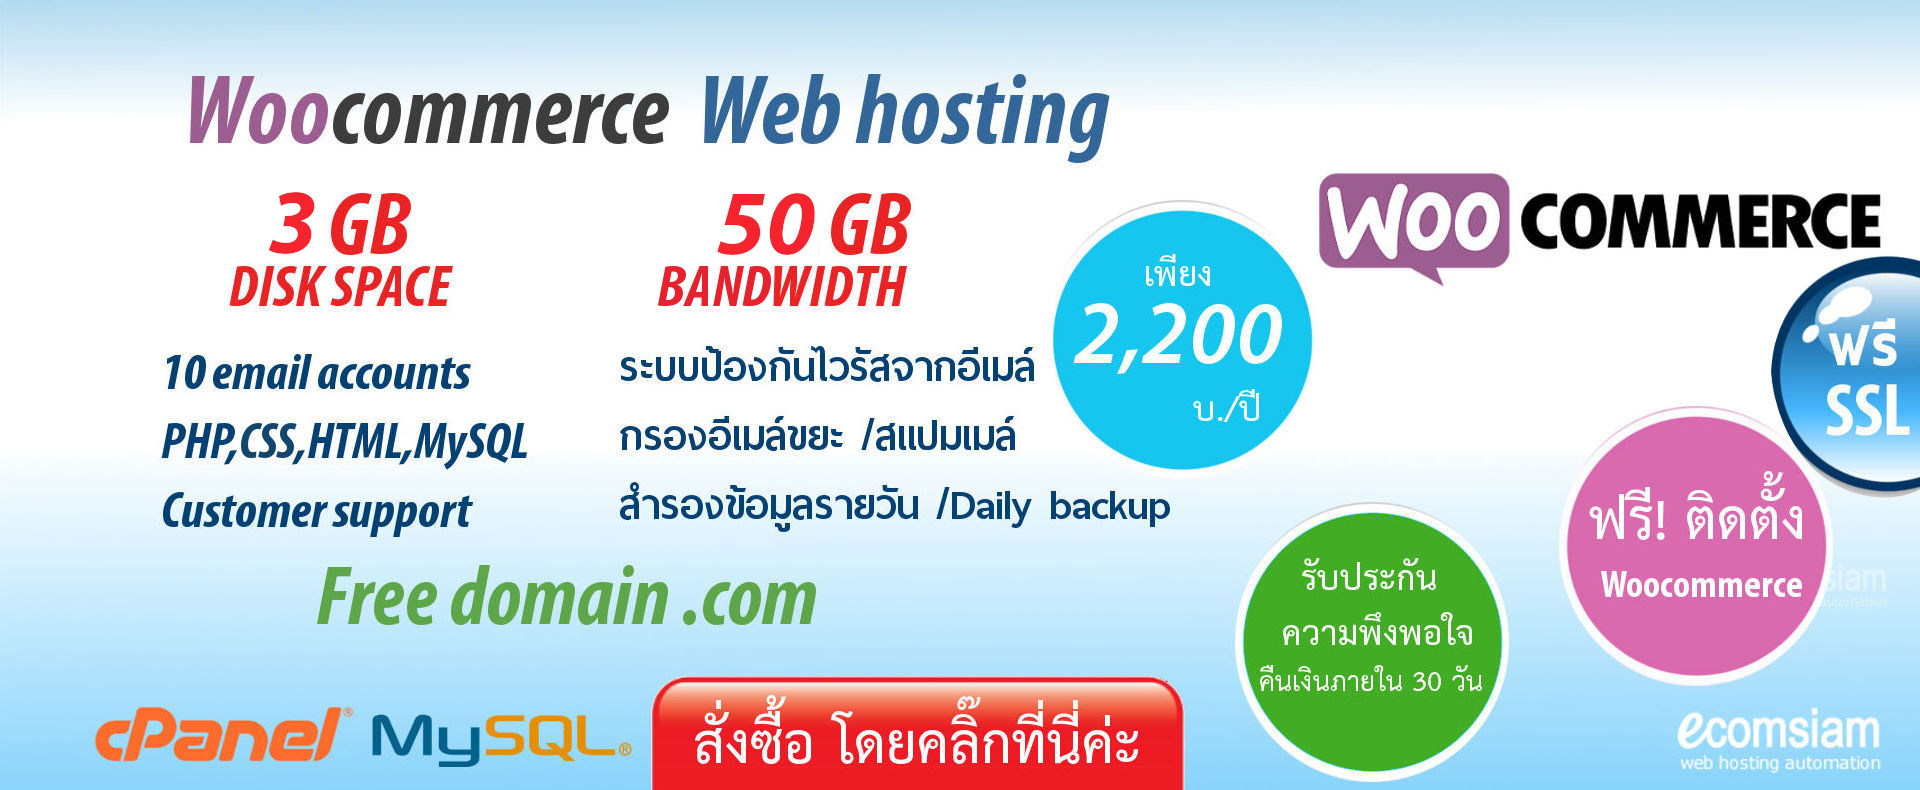 web hosting thailand บริการเว็บโฮสติ้ง ฟรีโดเมน ฟรี SSL -แนะนำ woocommerce web hosting thailandland เว็บโฮสติ้งไทย ฟรี โดเมน ฟรี SSL - web hosting thailand free domain - woocommerce web hosting-banner